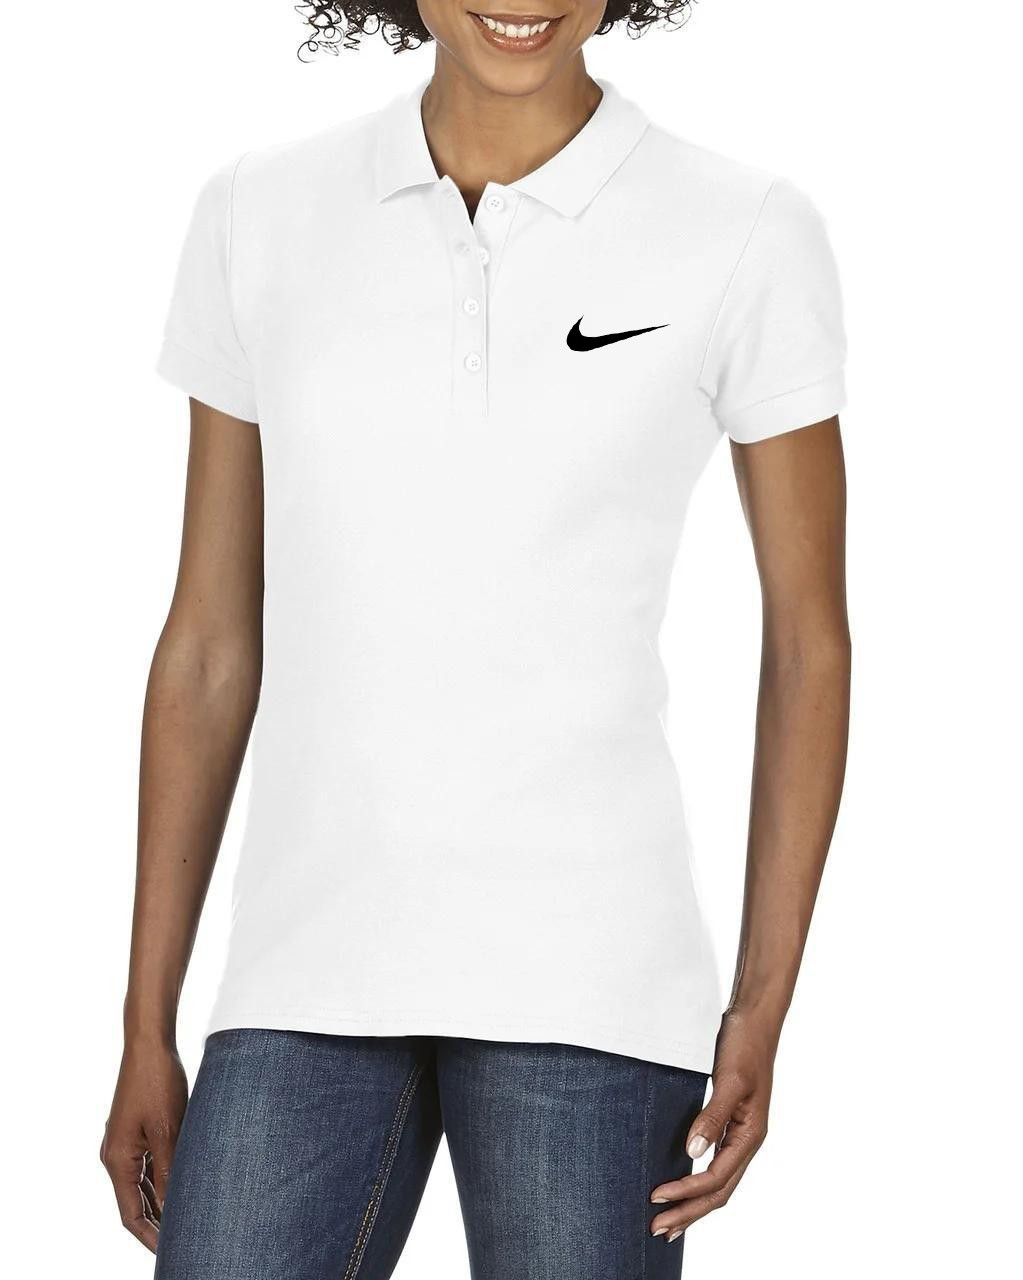 Поло Найк (Nike) жіноче, теніска Найк, жіноча футболка Найк, Турецький бавовна, S